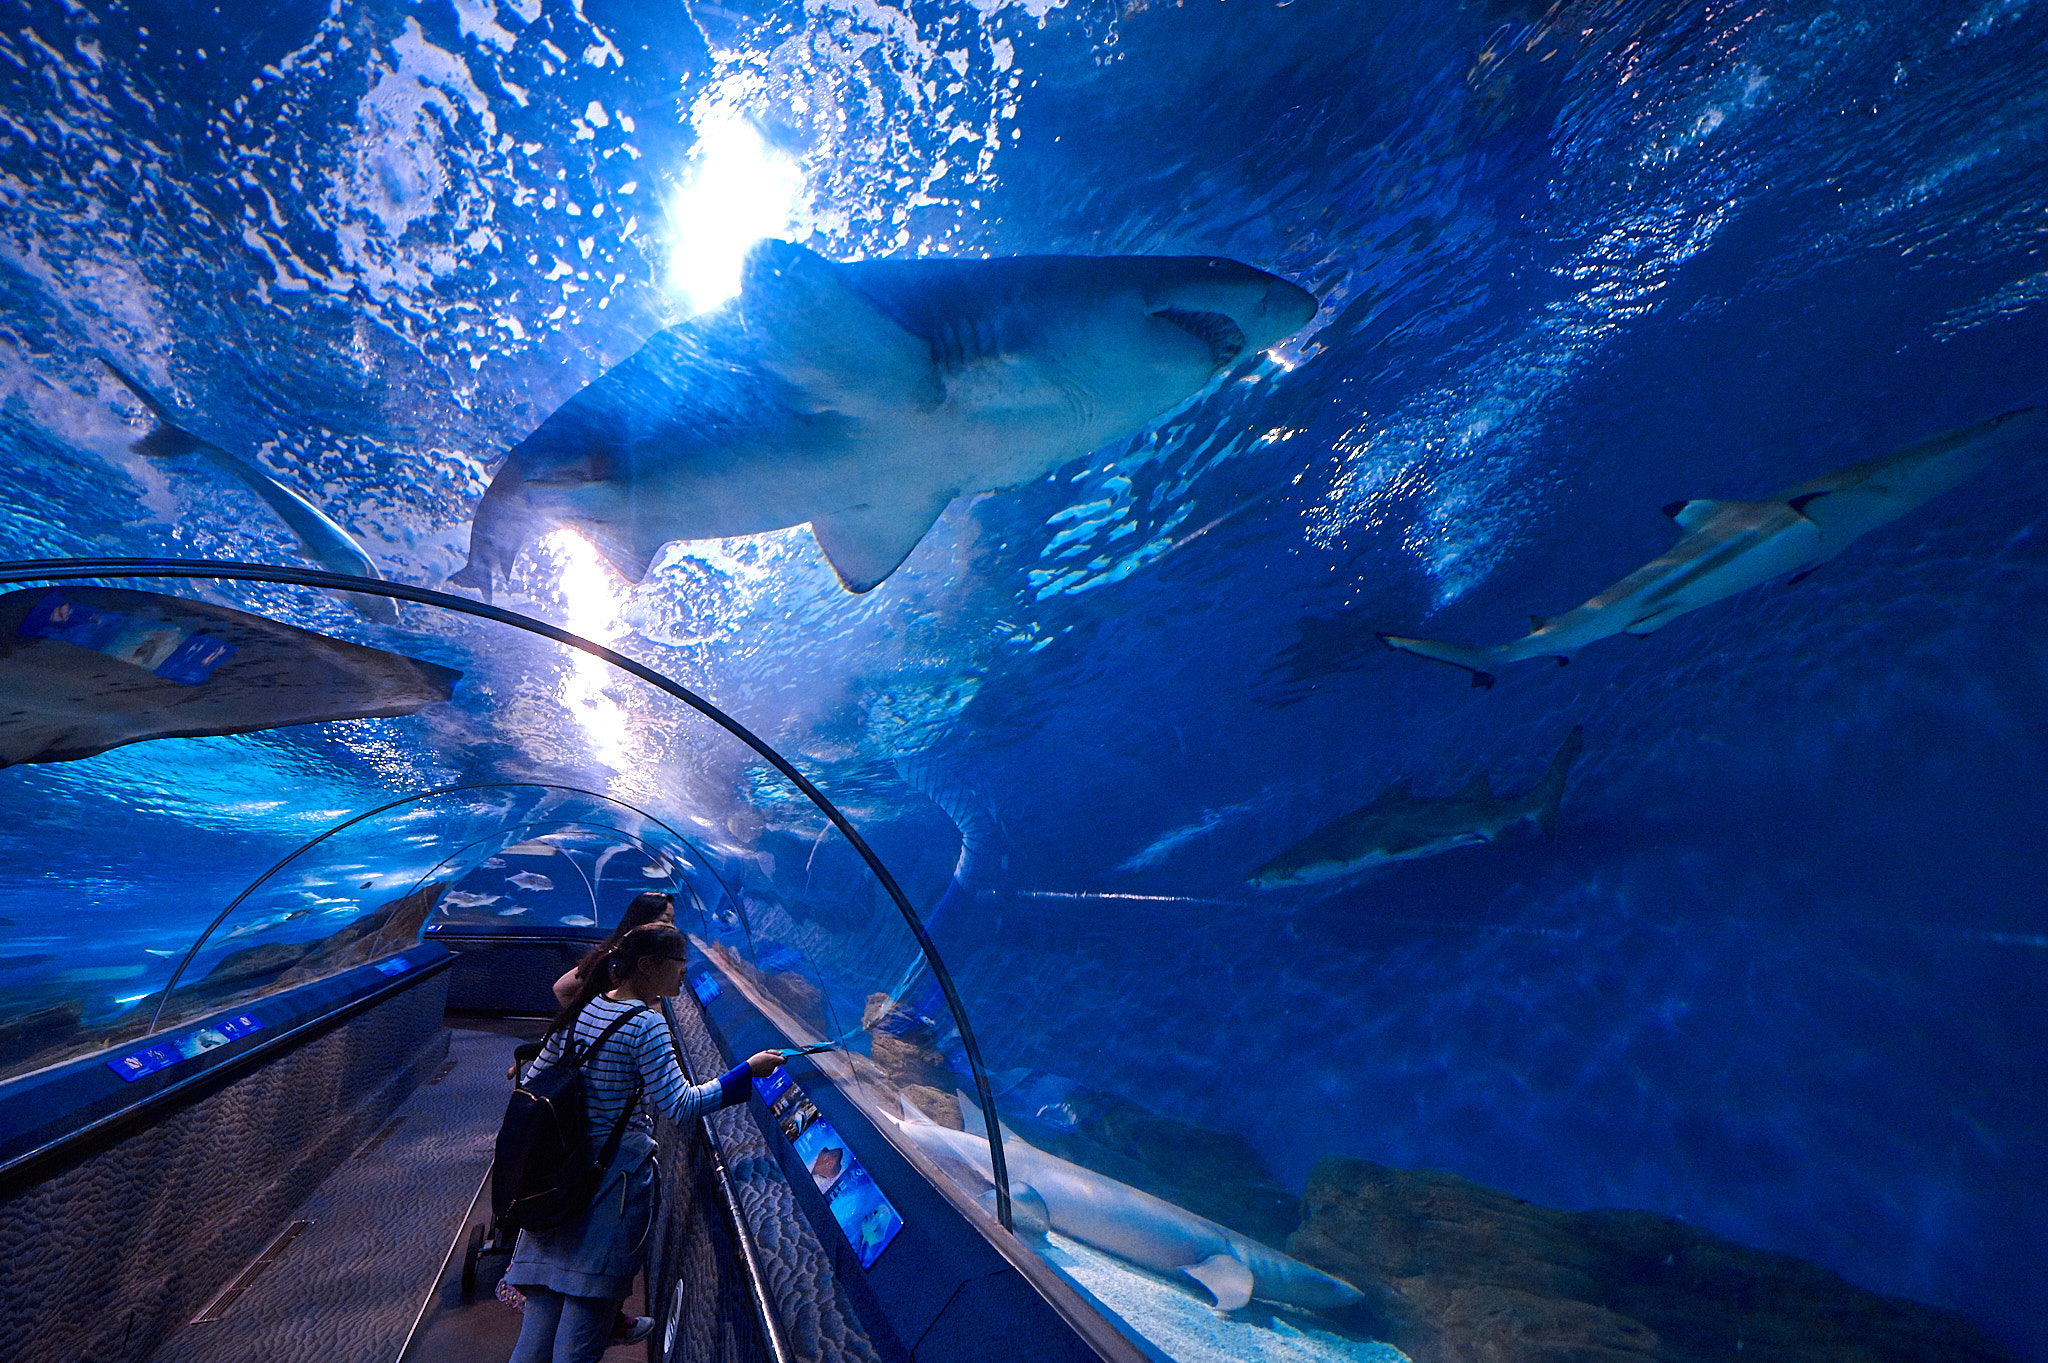 Ocean Aquarium 7toucans | Share your experience